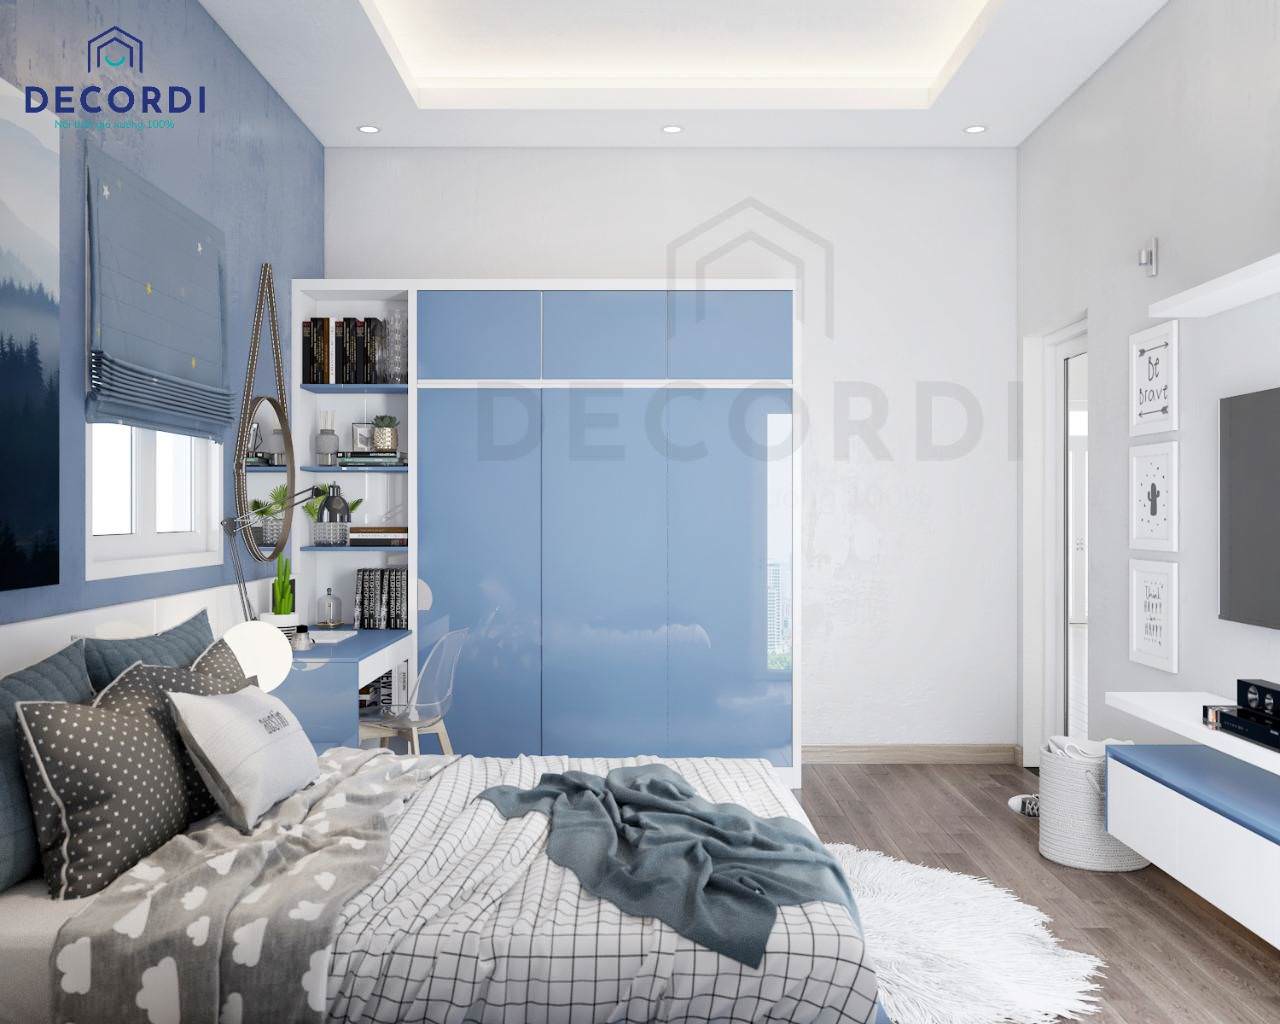 Bộ nội thất phòng ngủ nhỏ tiện nghi với chất liệu gỗ công nghiệp cao cấp bền đẹp